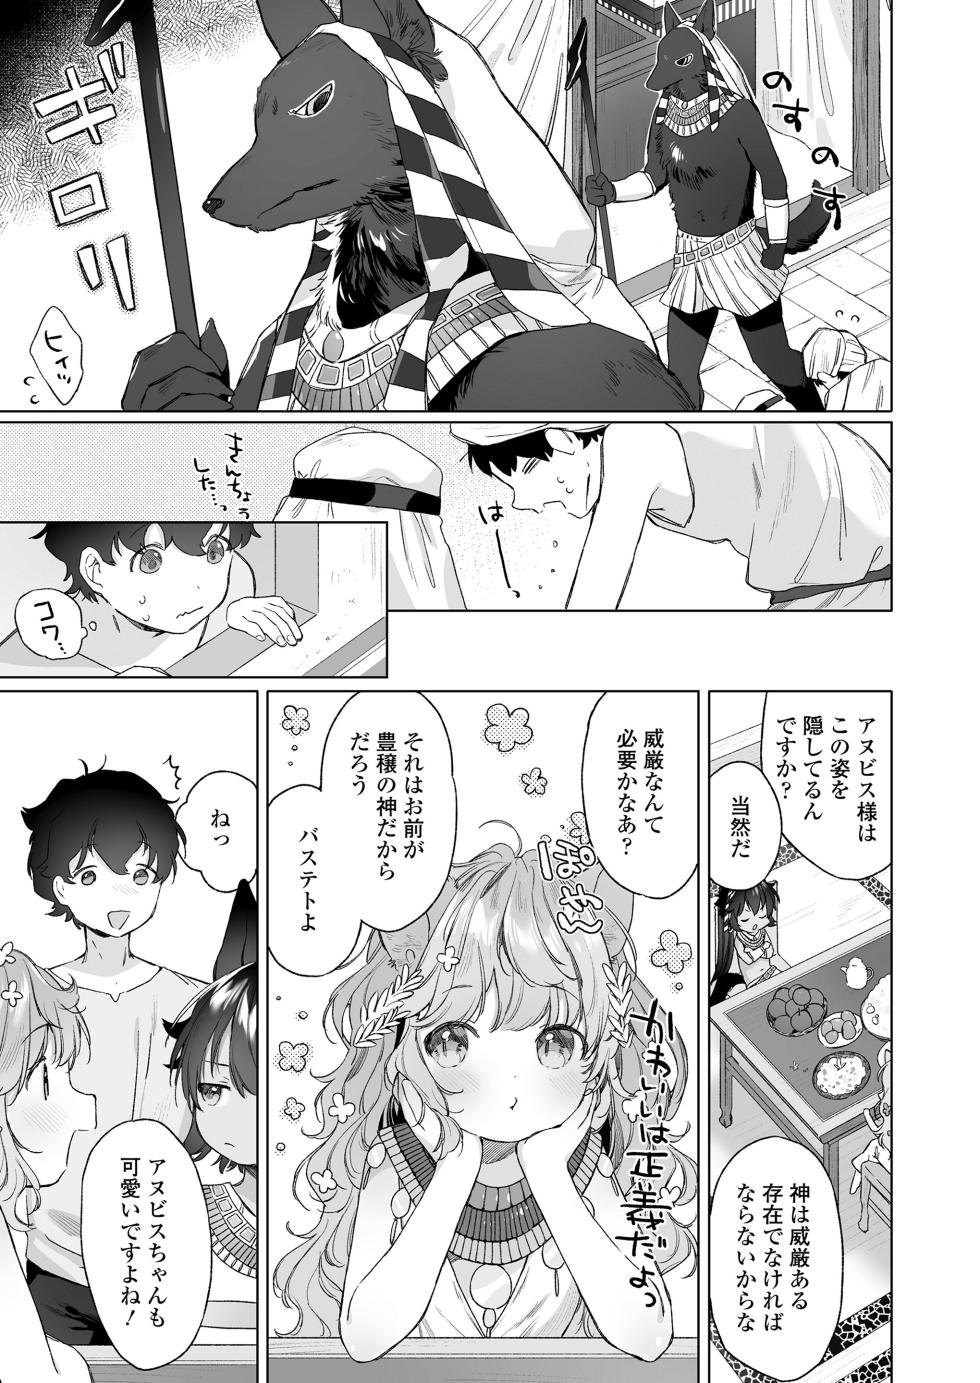 Towako 15 [Digital] - Page 7